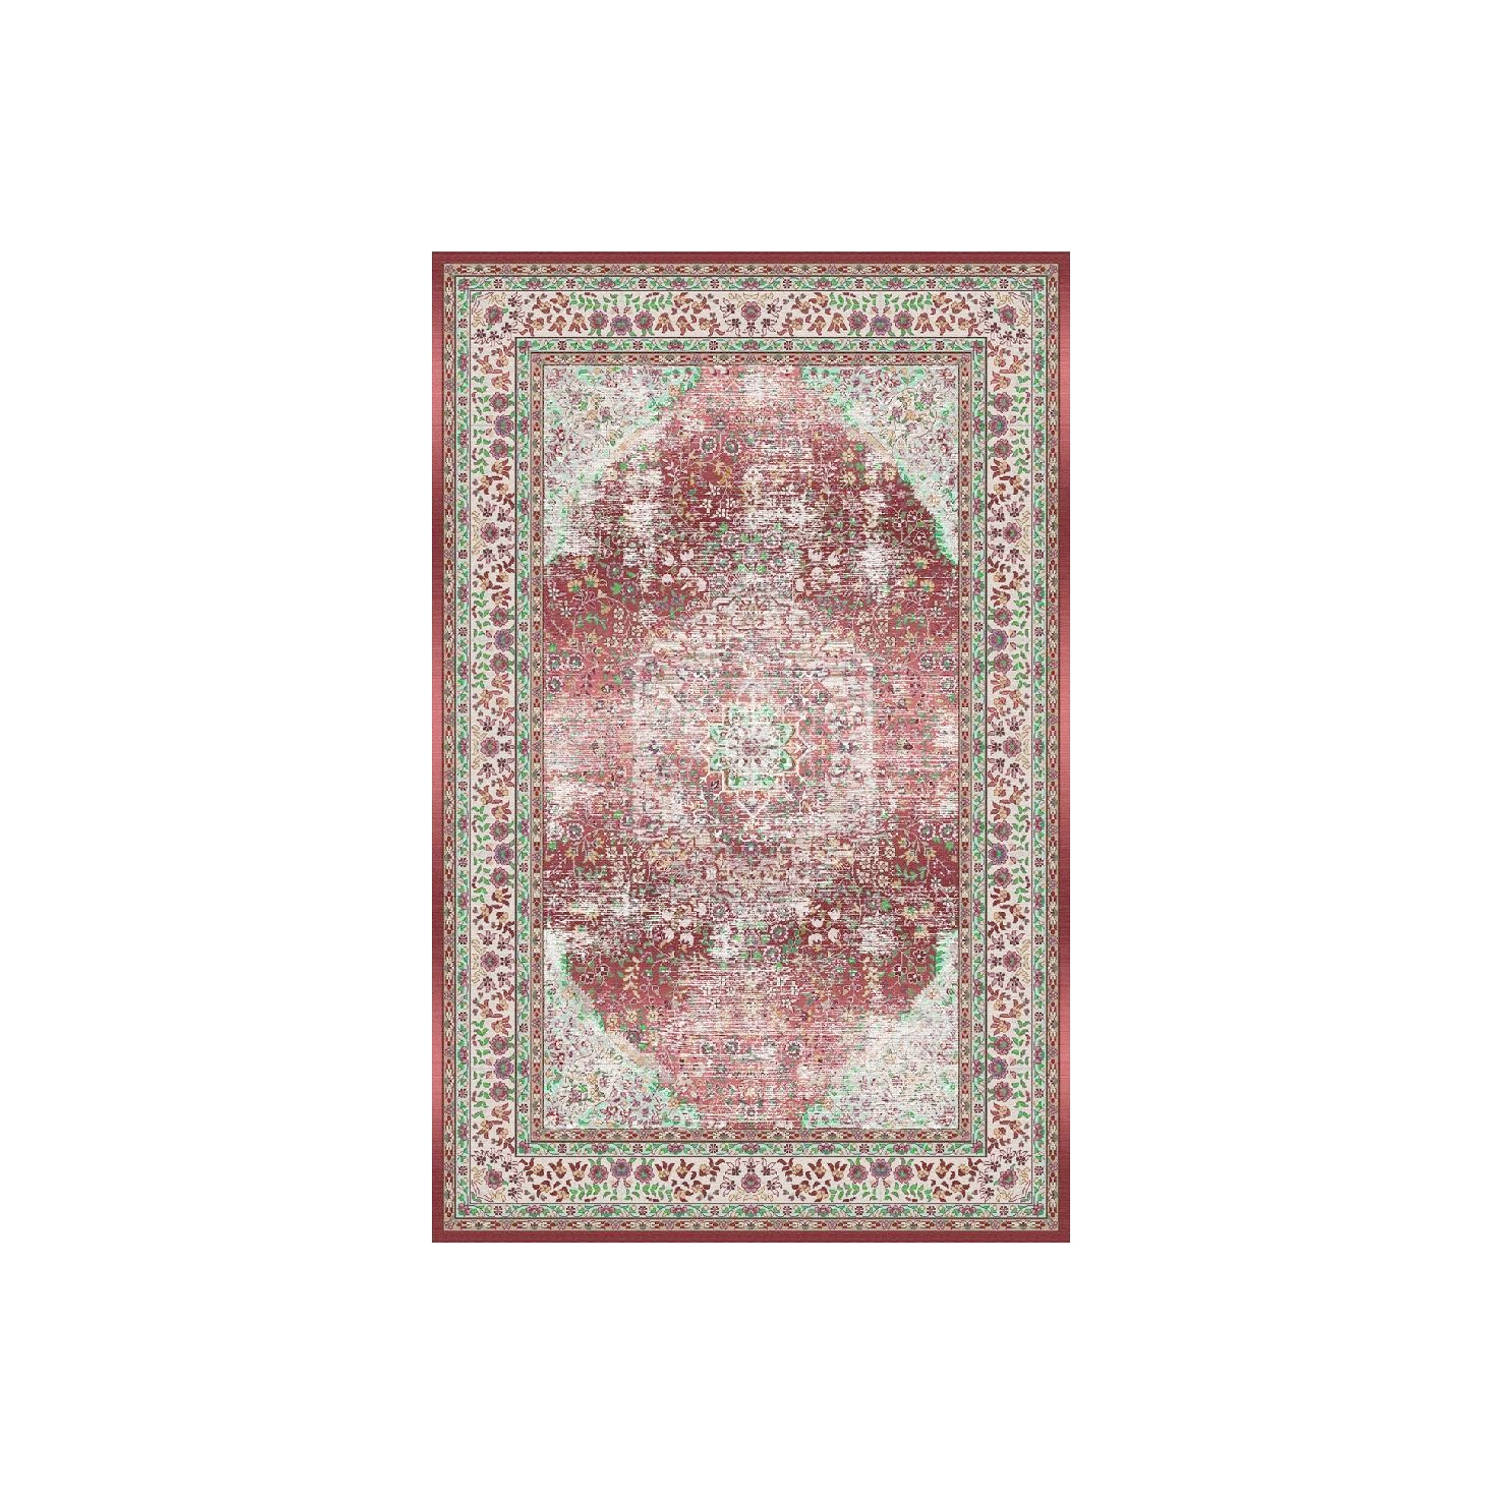 Vloerkleed vintage 70x140cm donkerrood perzisch oosters tapijt